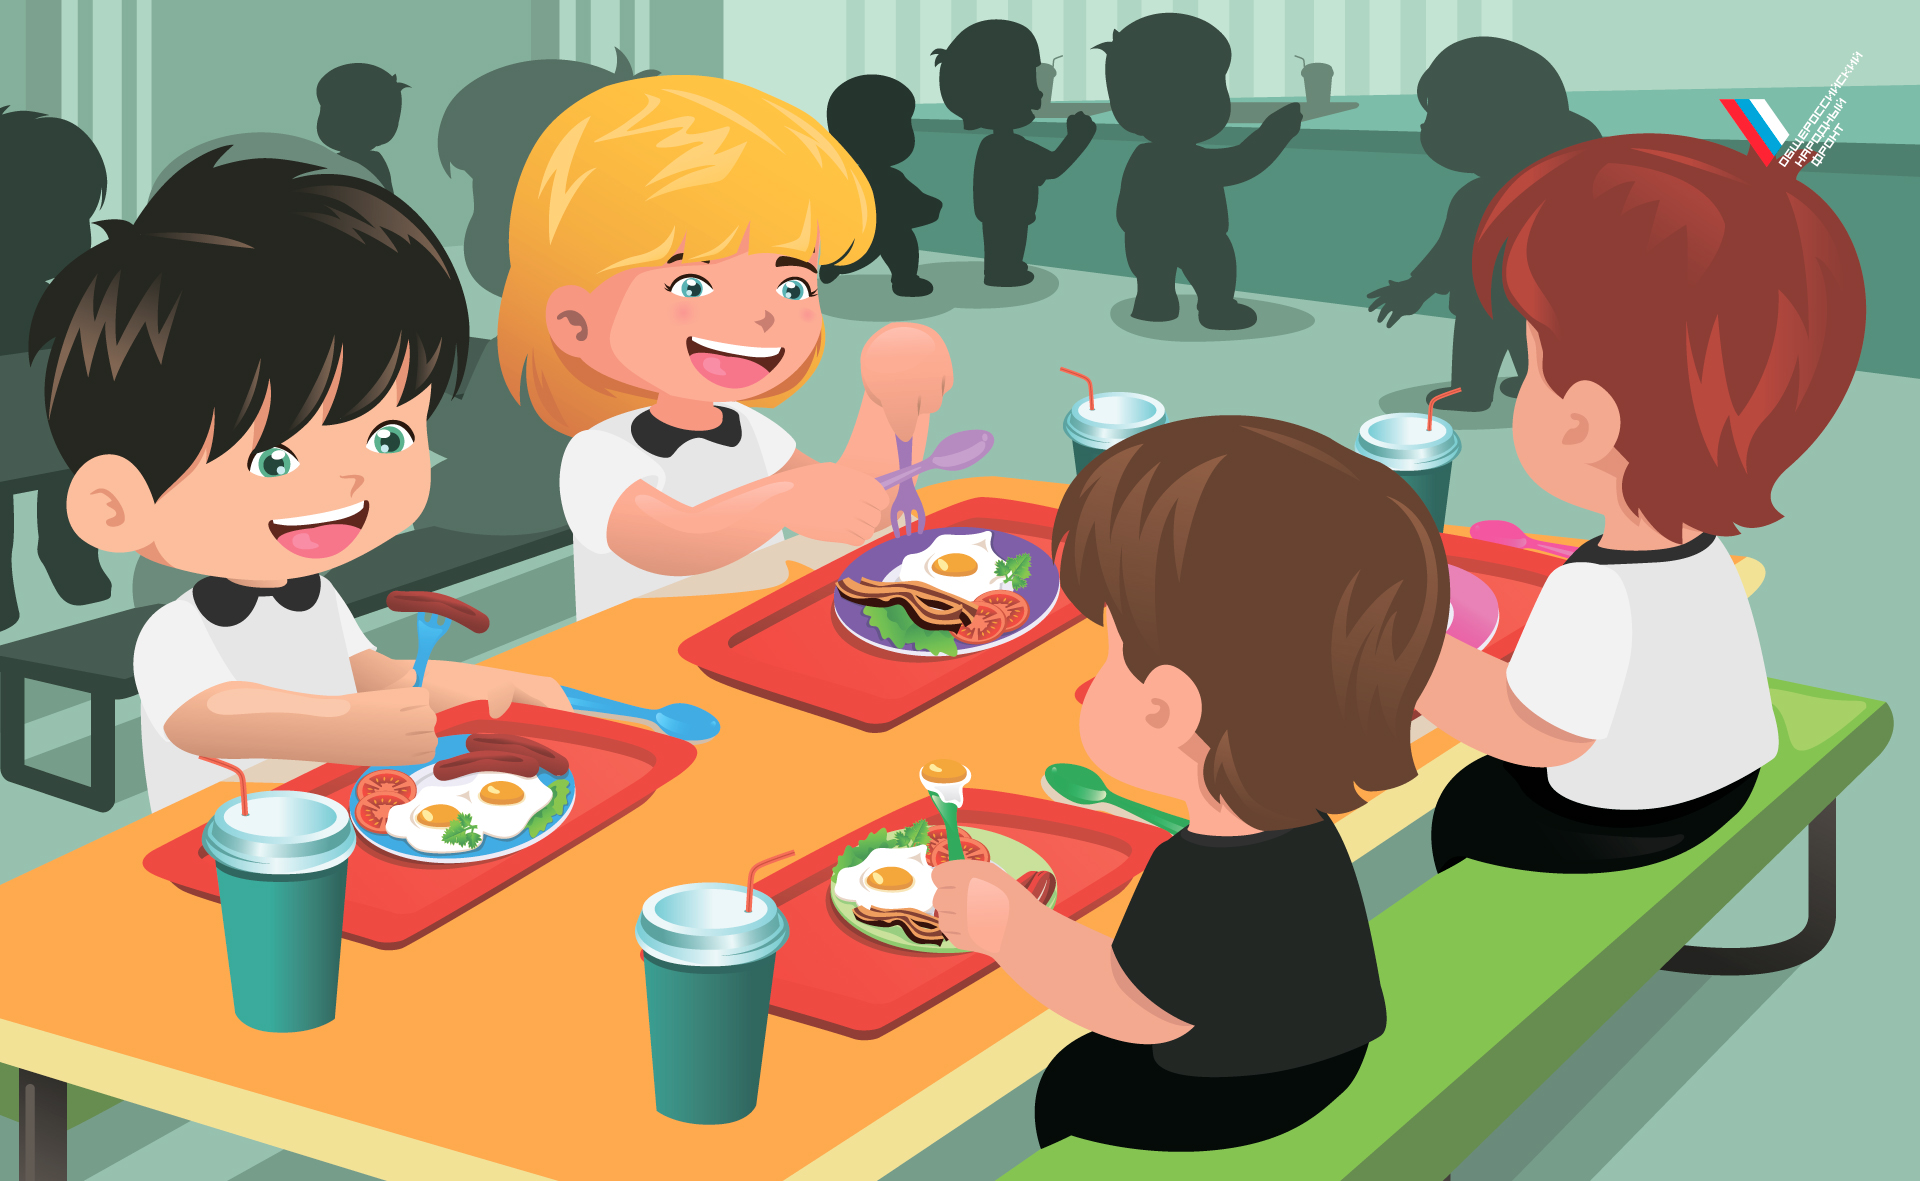 Ребенок овз питание в школе. Дети обедают в школе. Школьная столовая. Дети обедают в столовой. Питание детей в школе.